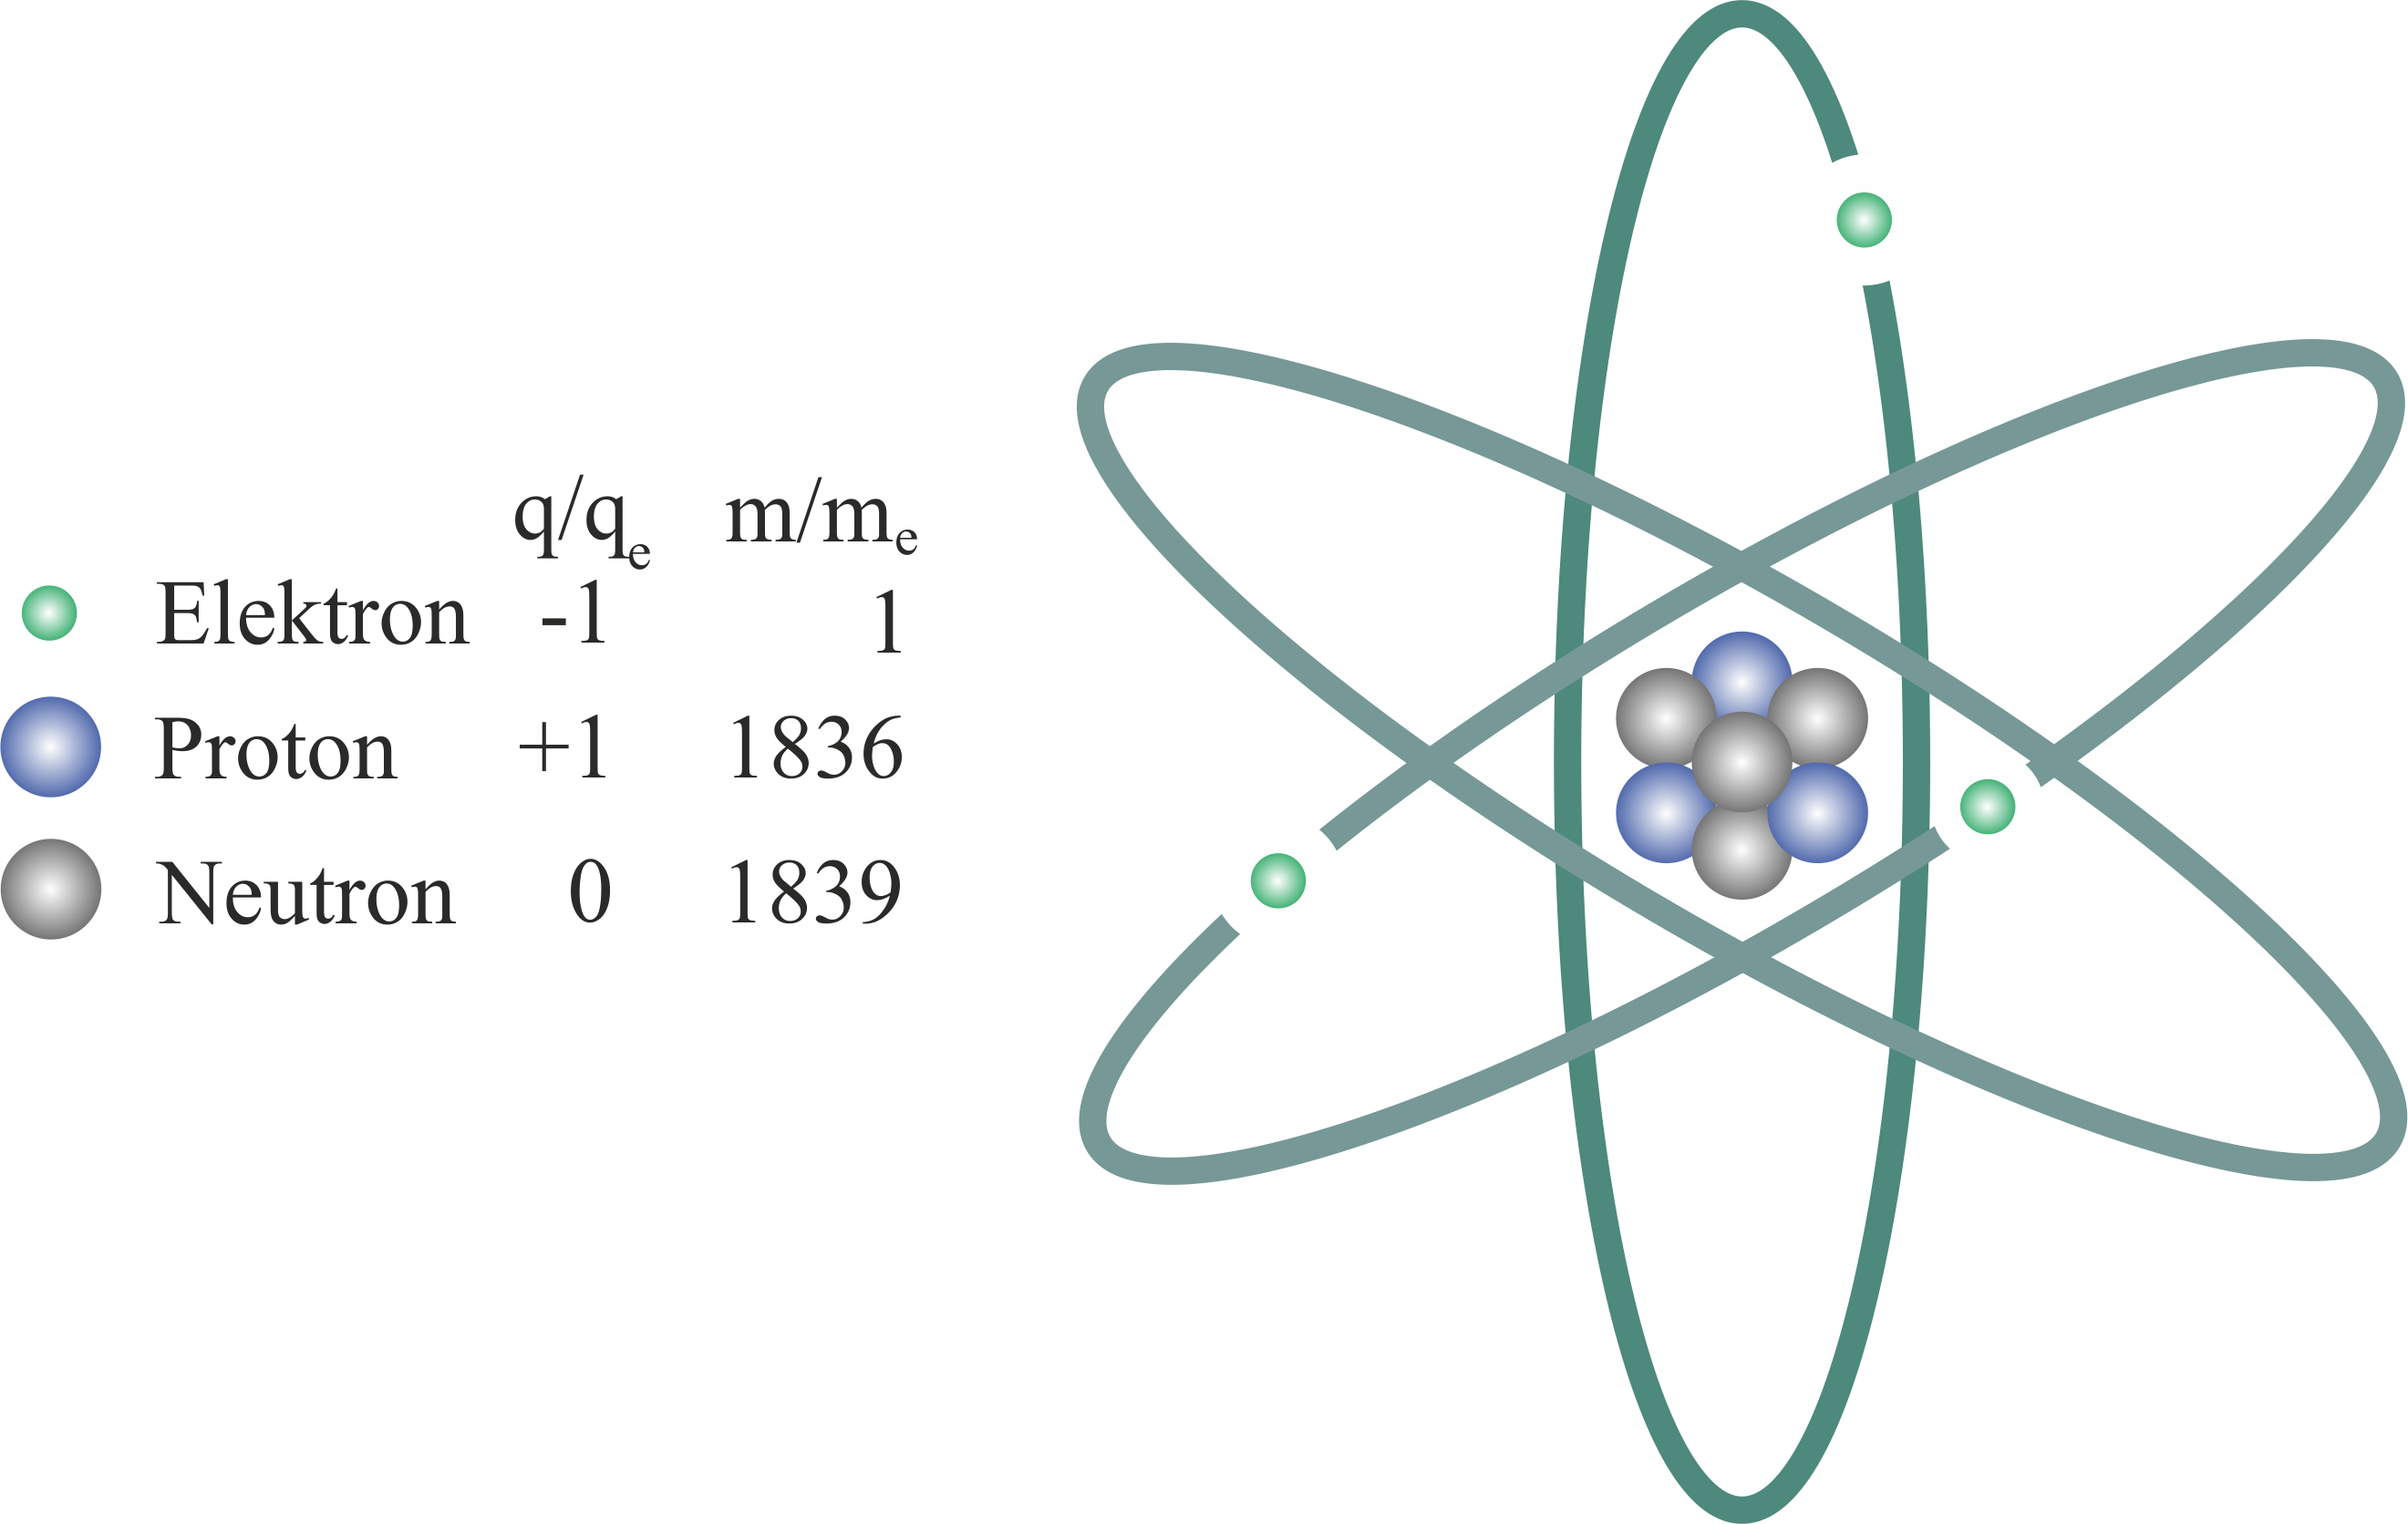 Das Lithium Atom besteht aus 3 Protonen, 4 Neutronen und 3 Elektronen. Die Darstellung hier dient nur zur Veranschaulichung.